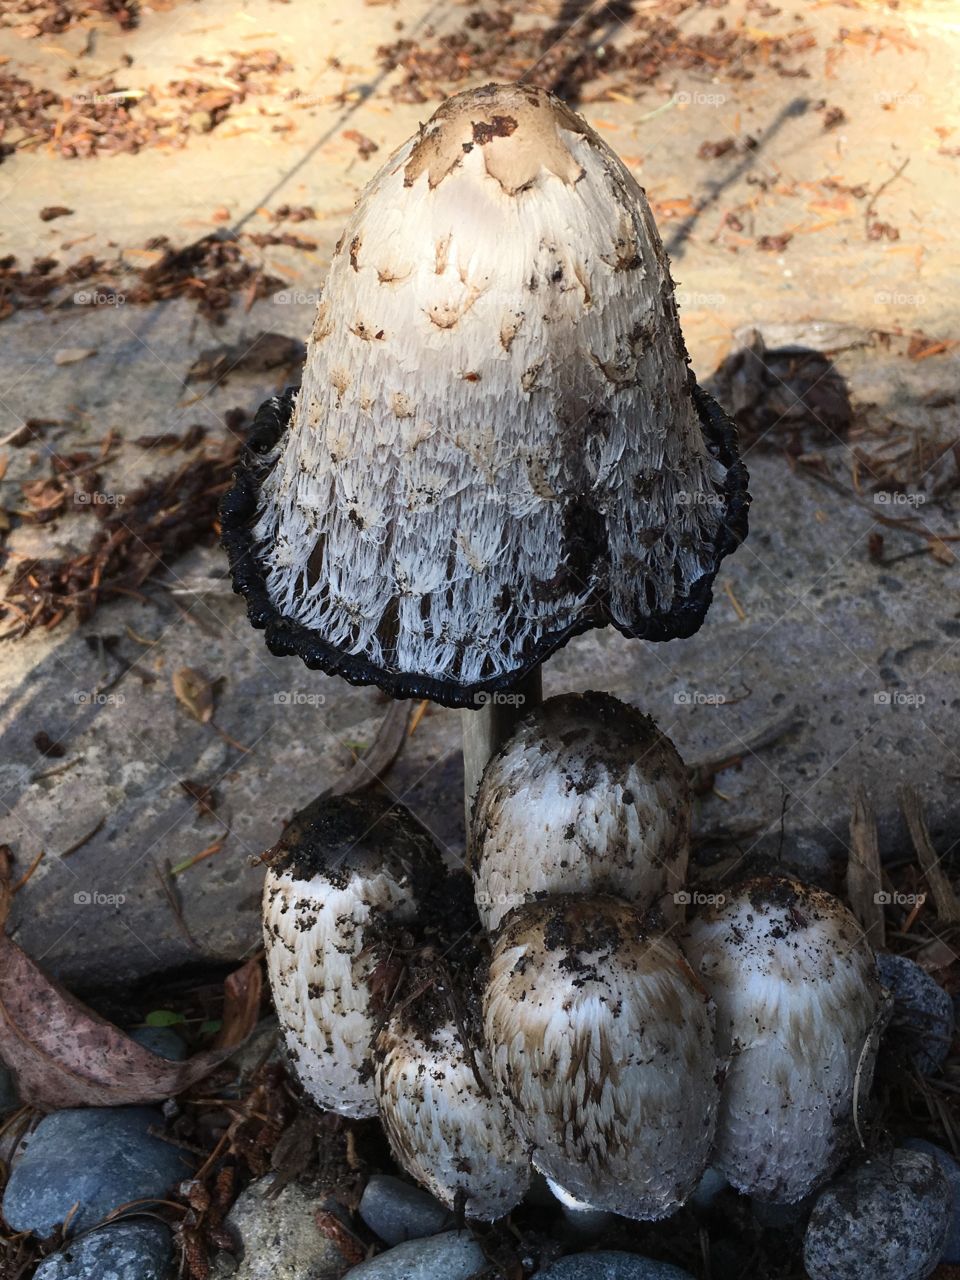 Shaggy ink cap mushrooms